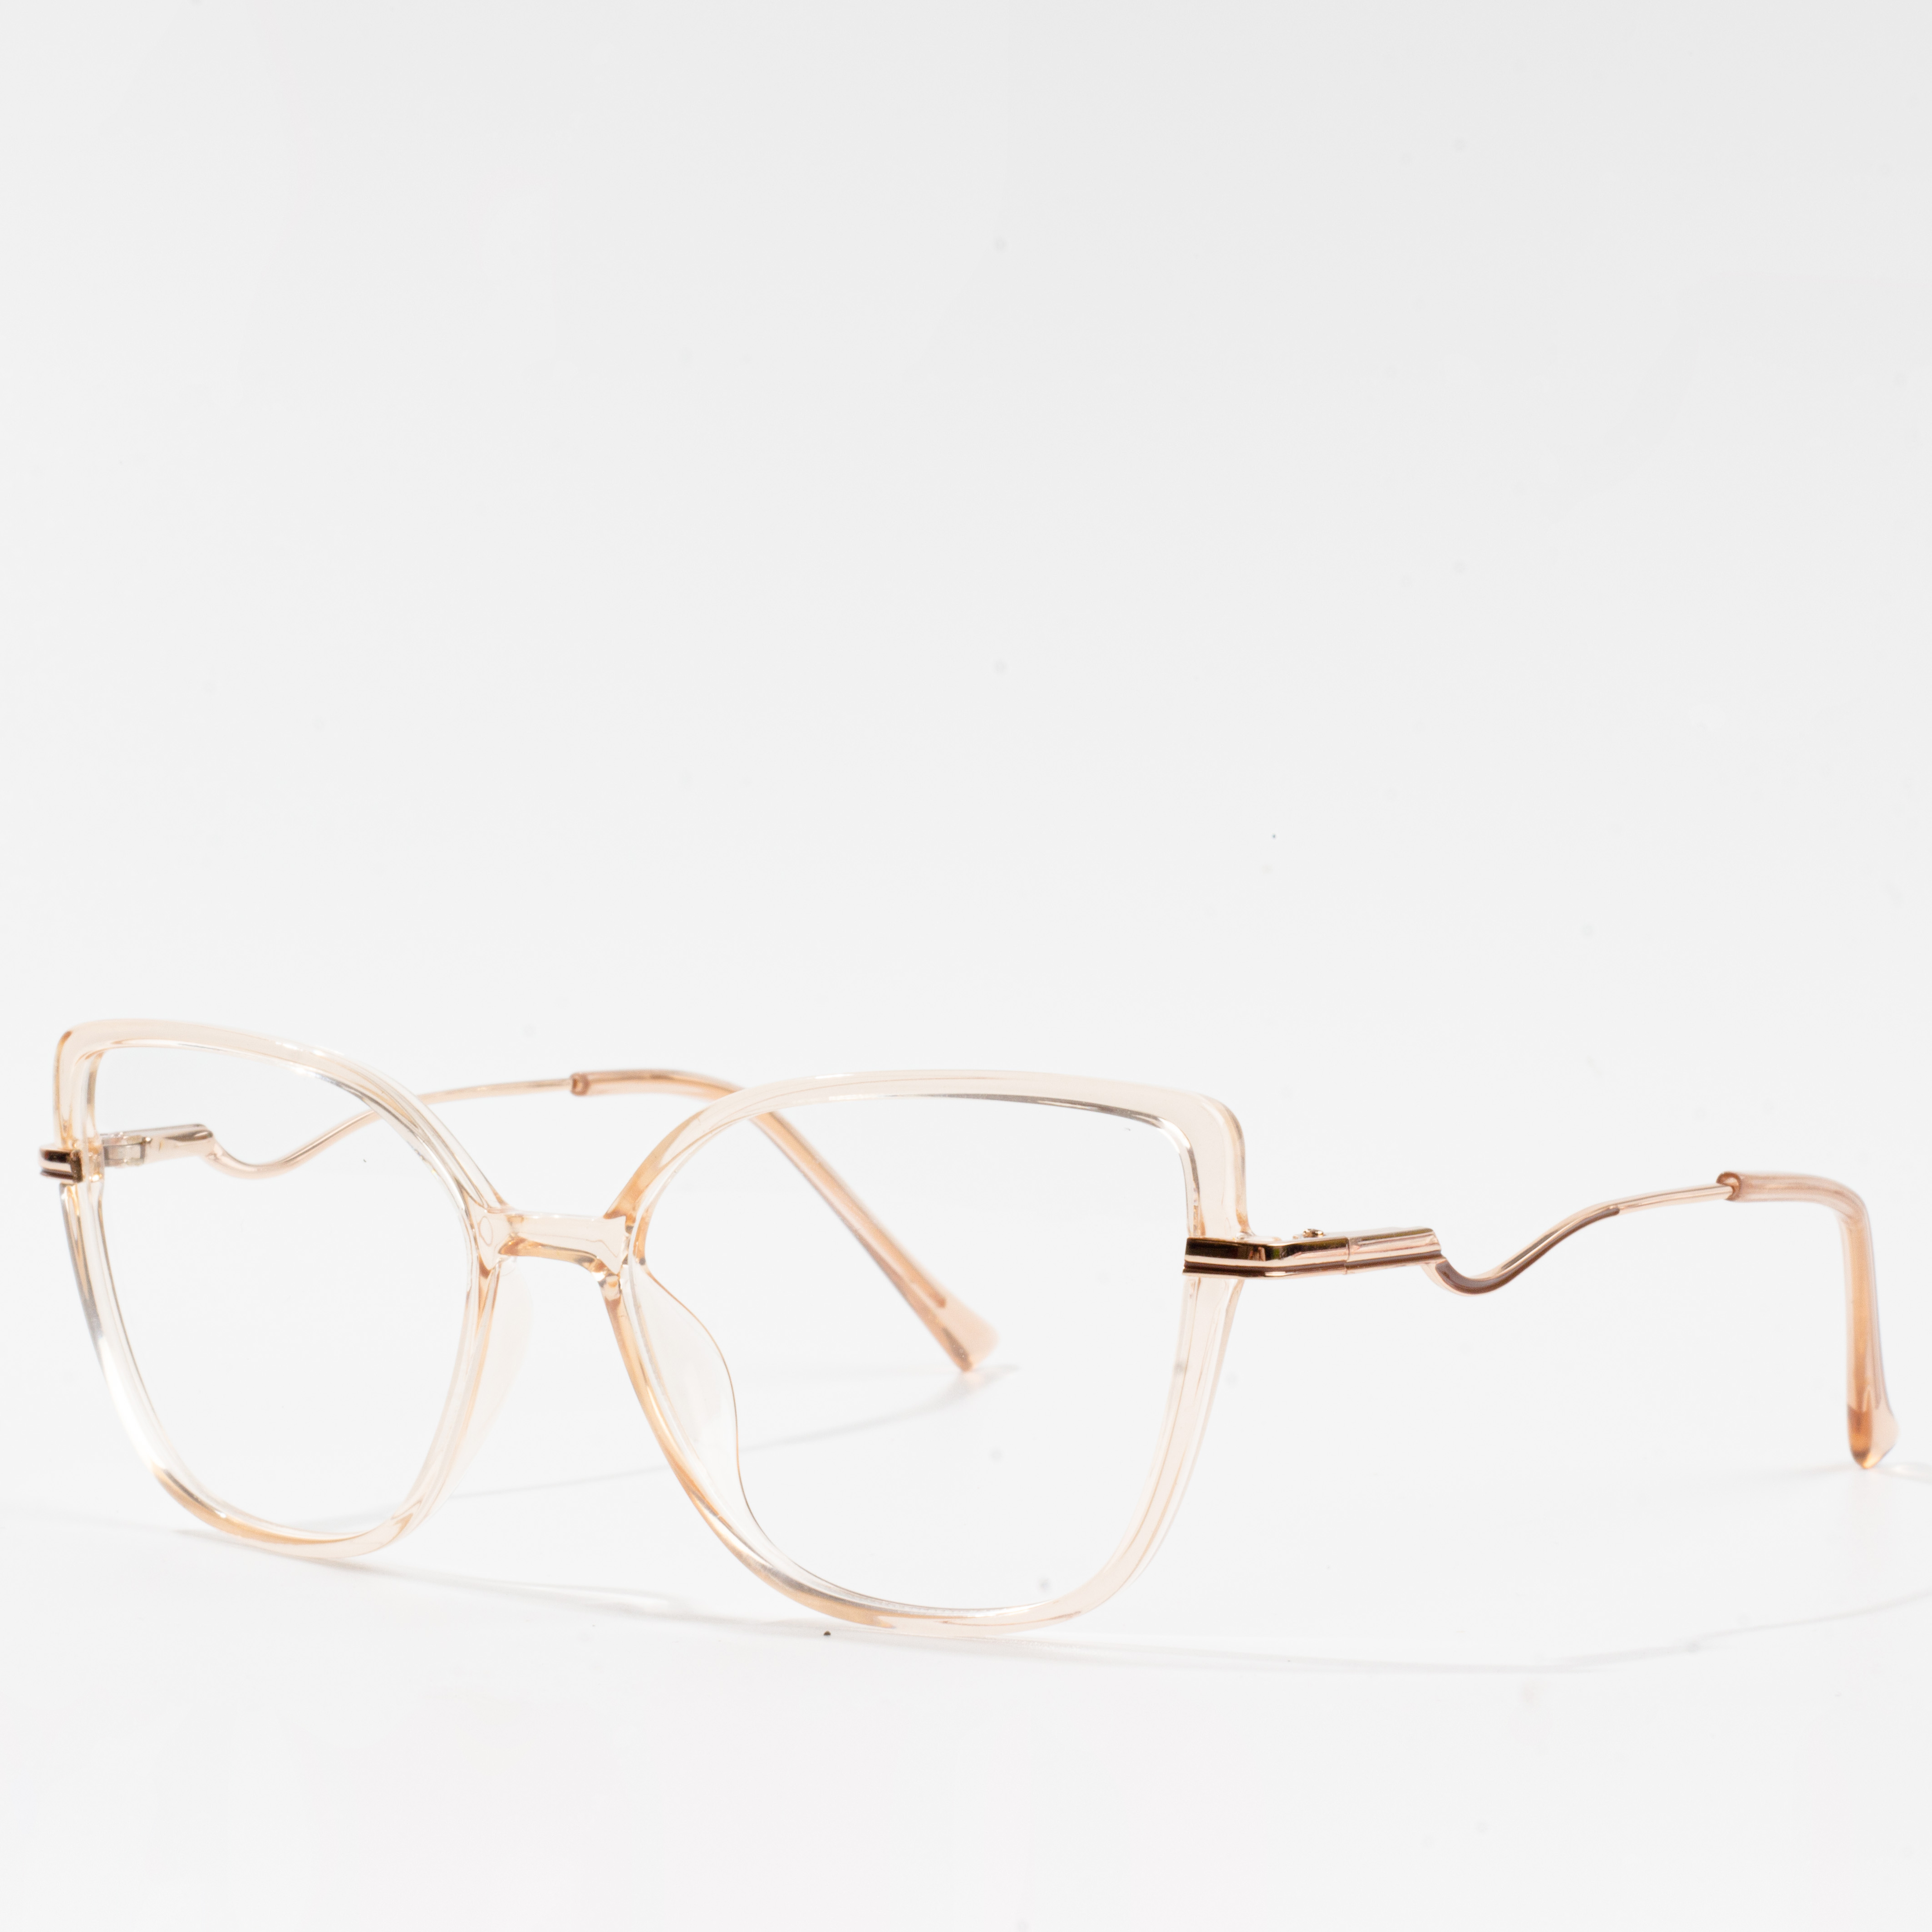 iring frame eyeglasses